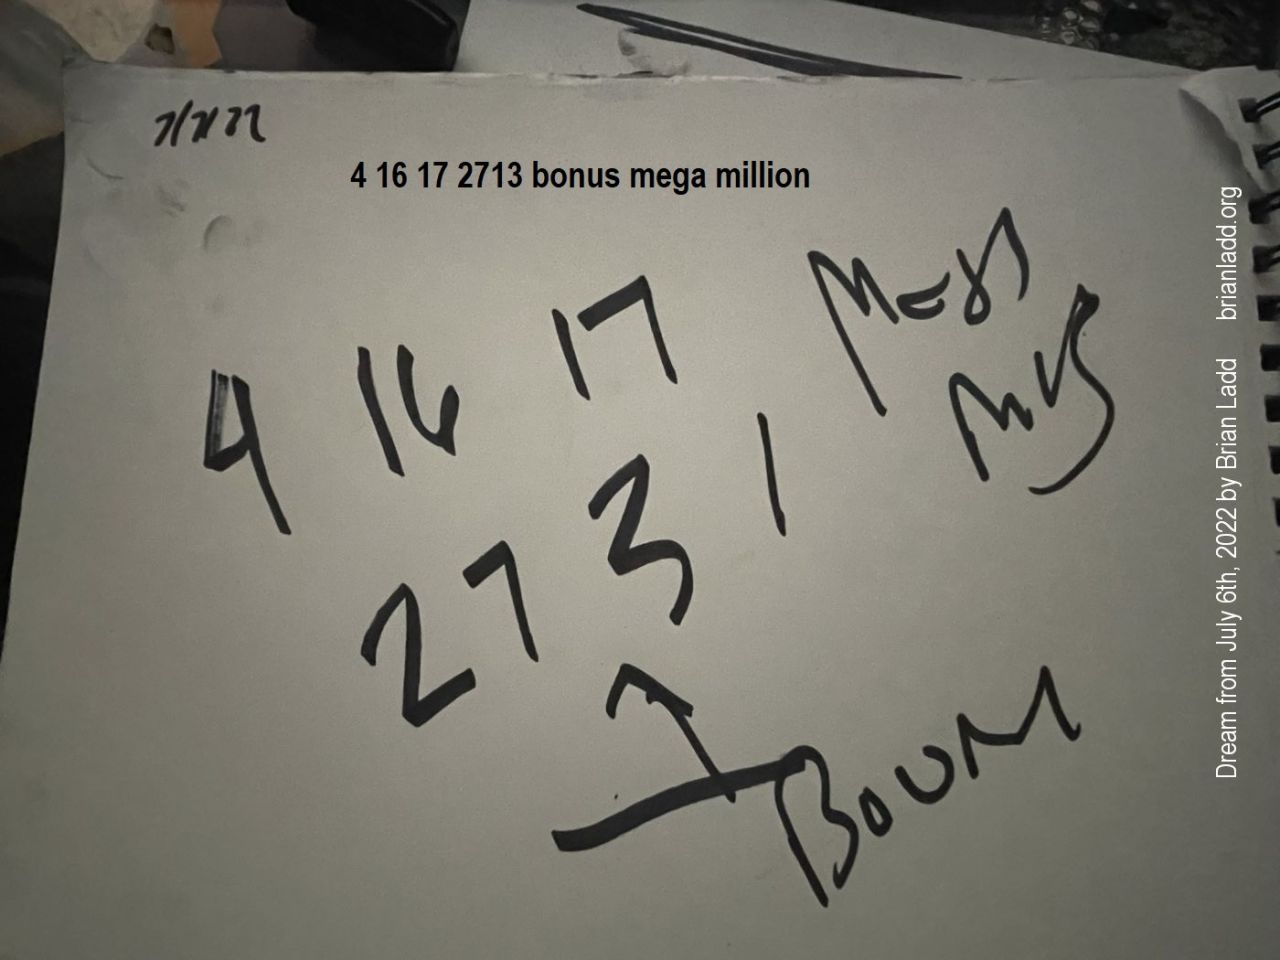 7 July 2022 1  4 16 17 2713 bonus mega million...
4 16 17 2713 bonus mega million.
